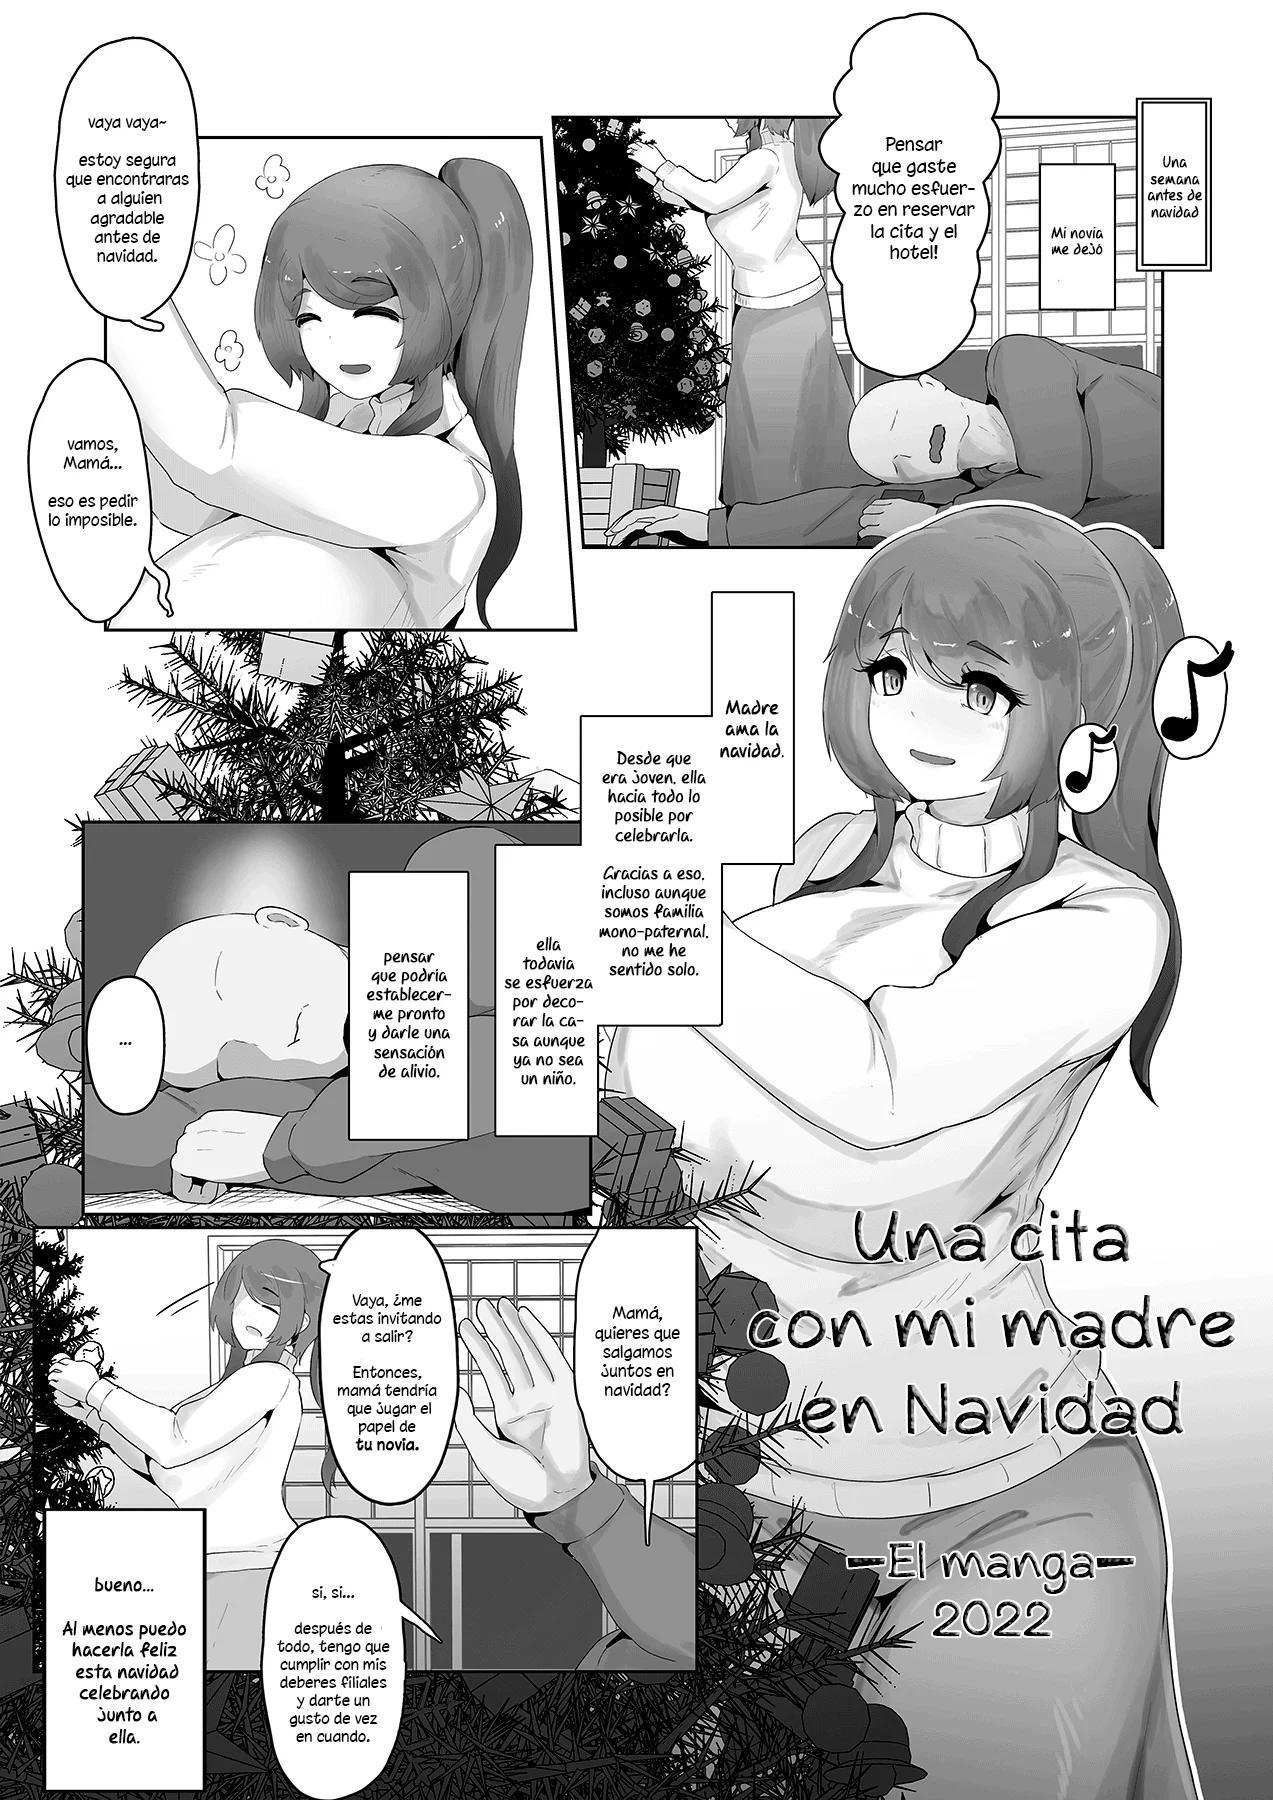 Una cita con mi madre en Navidad El manga 2022 - 1